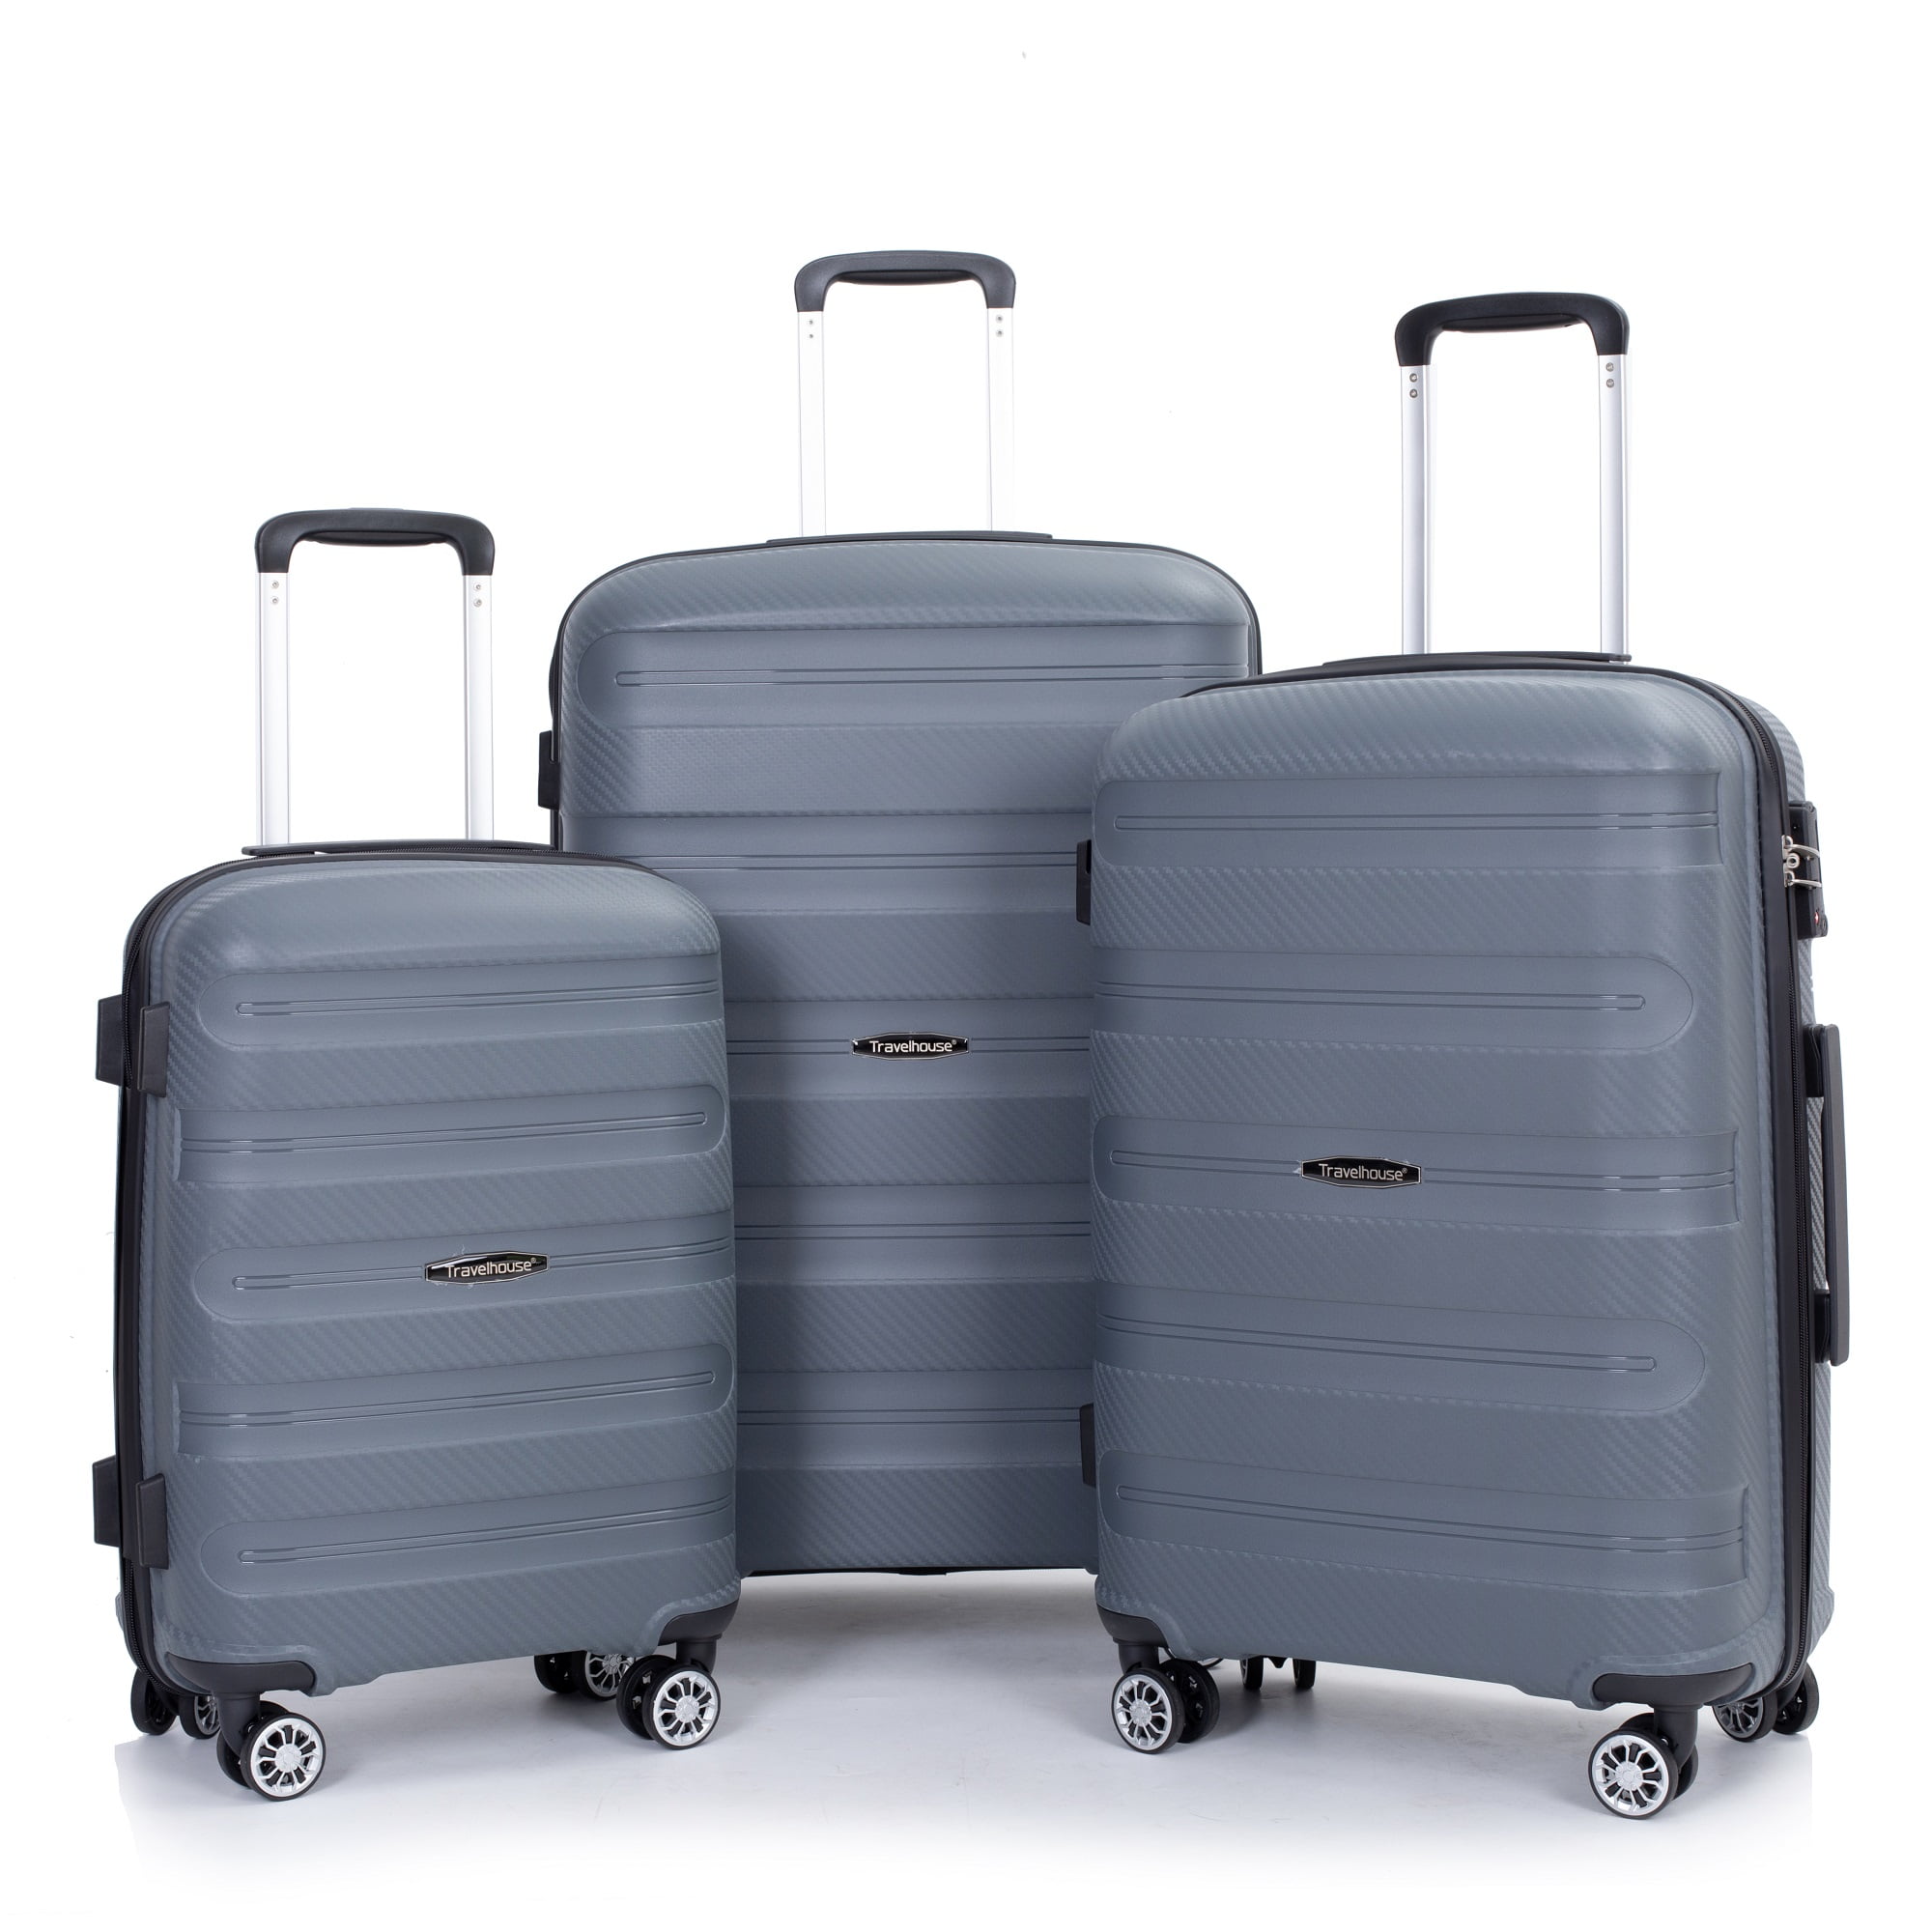 Travelhouse 3 Piece Hardside Luggage Sets Hardshell Durable Lightweight ...